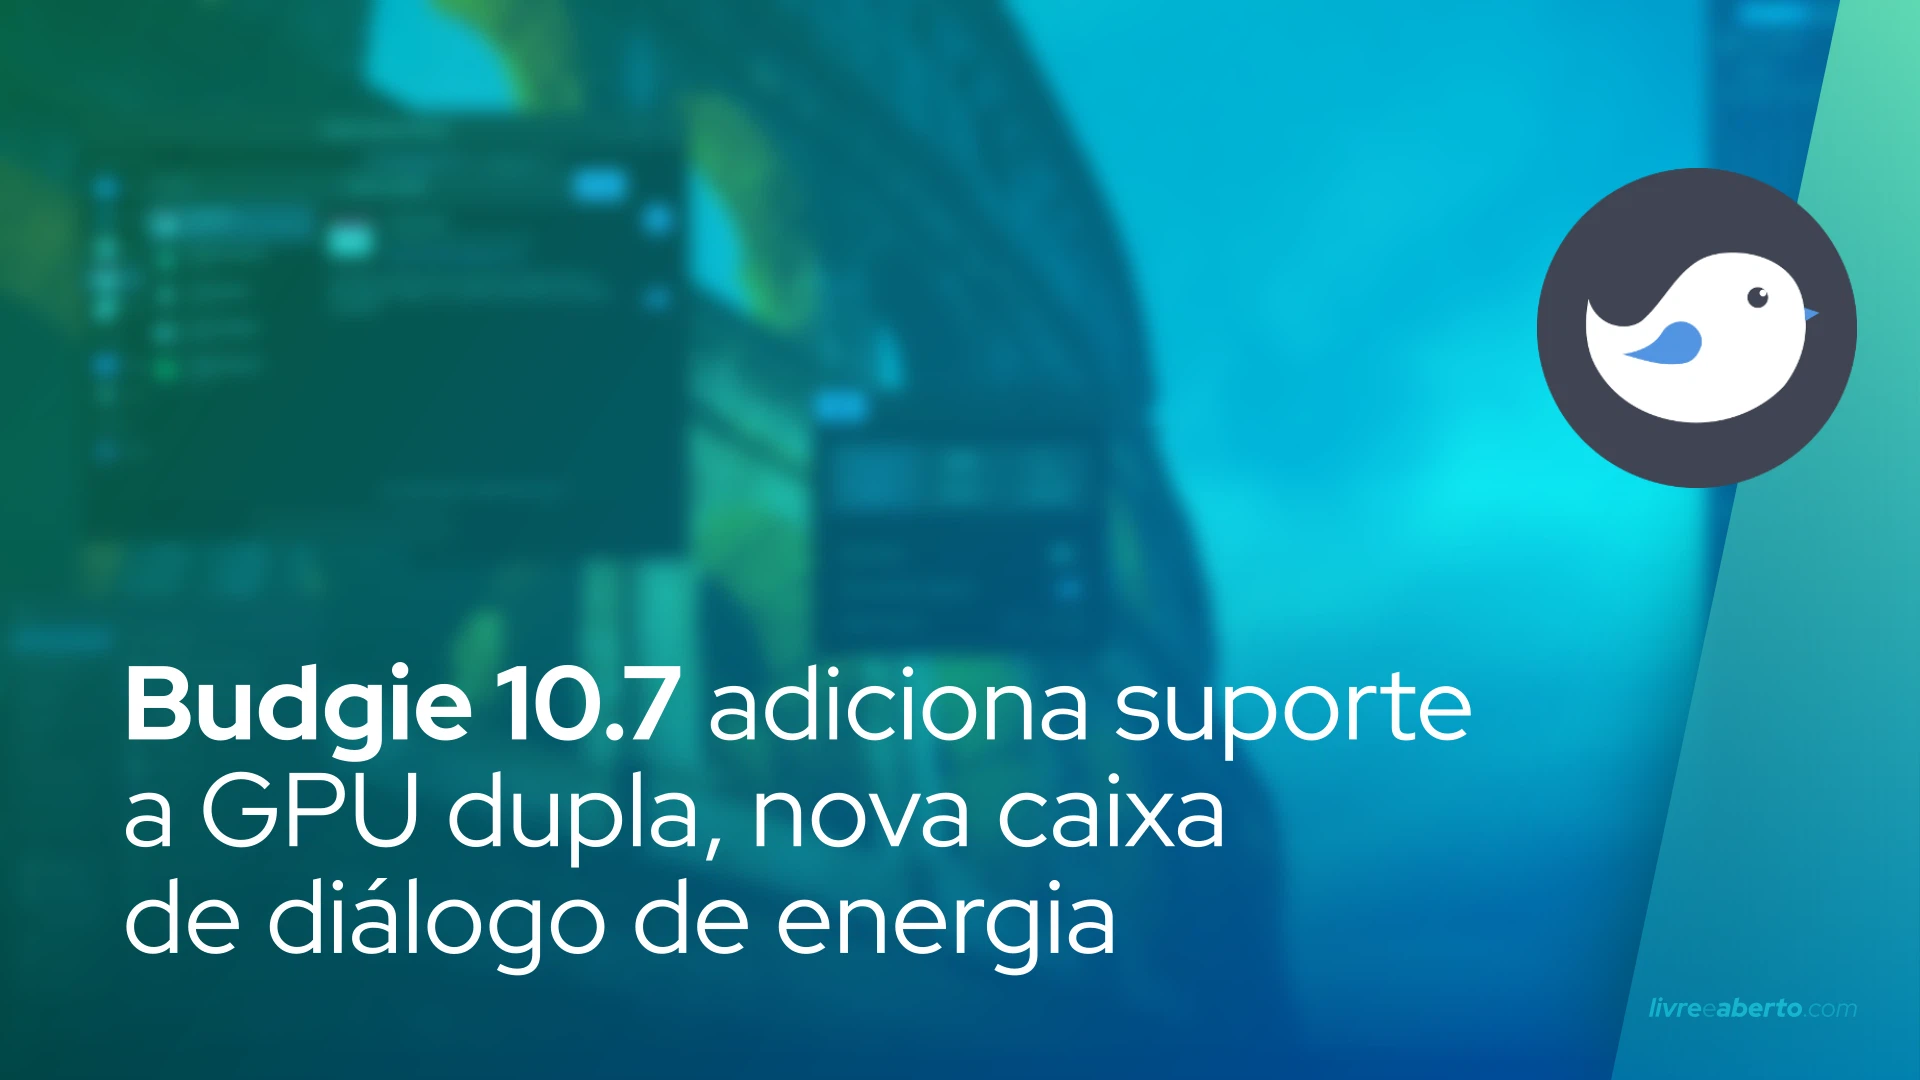 Budgie 10.7 adiciona suporte a GPU dupla, nova caixa de diálogo de energia